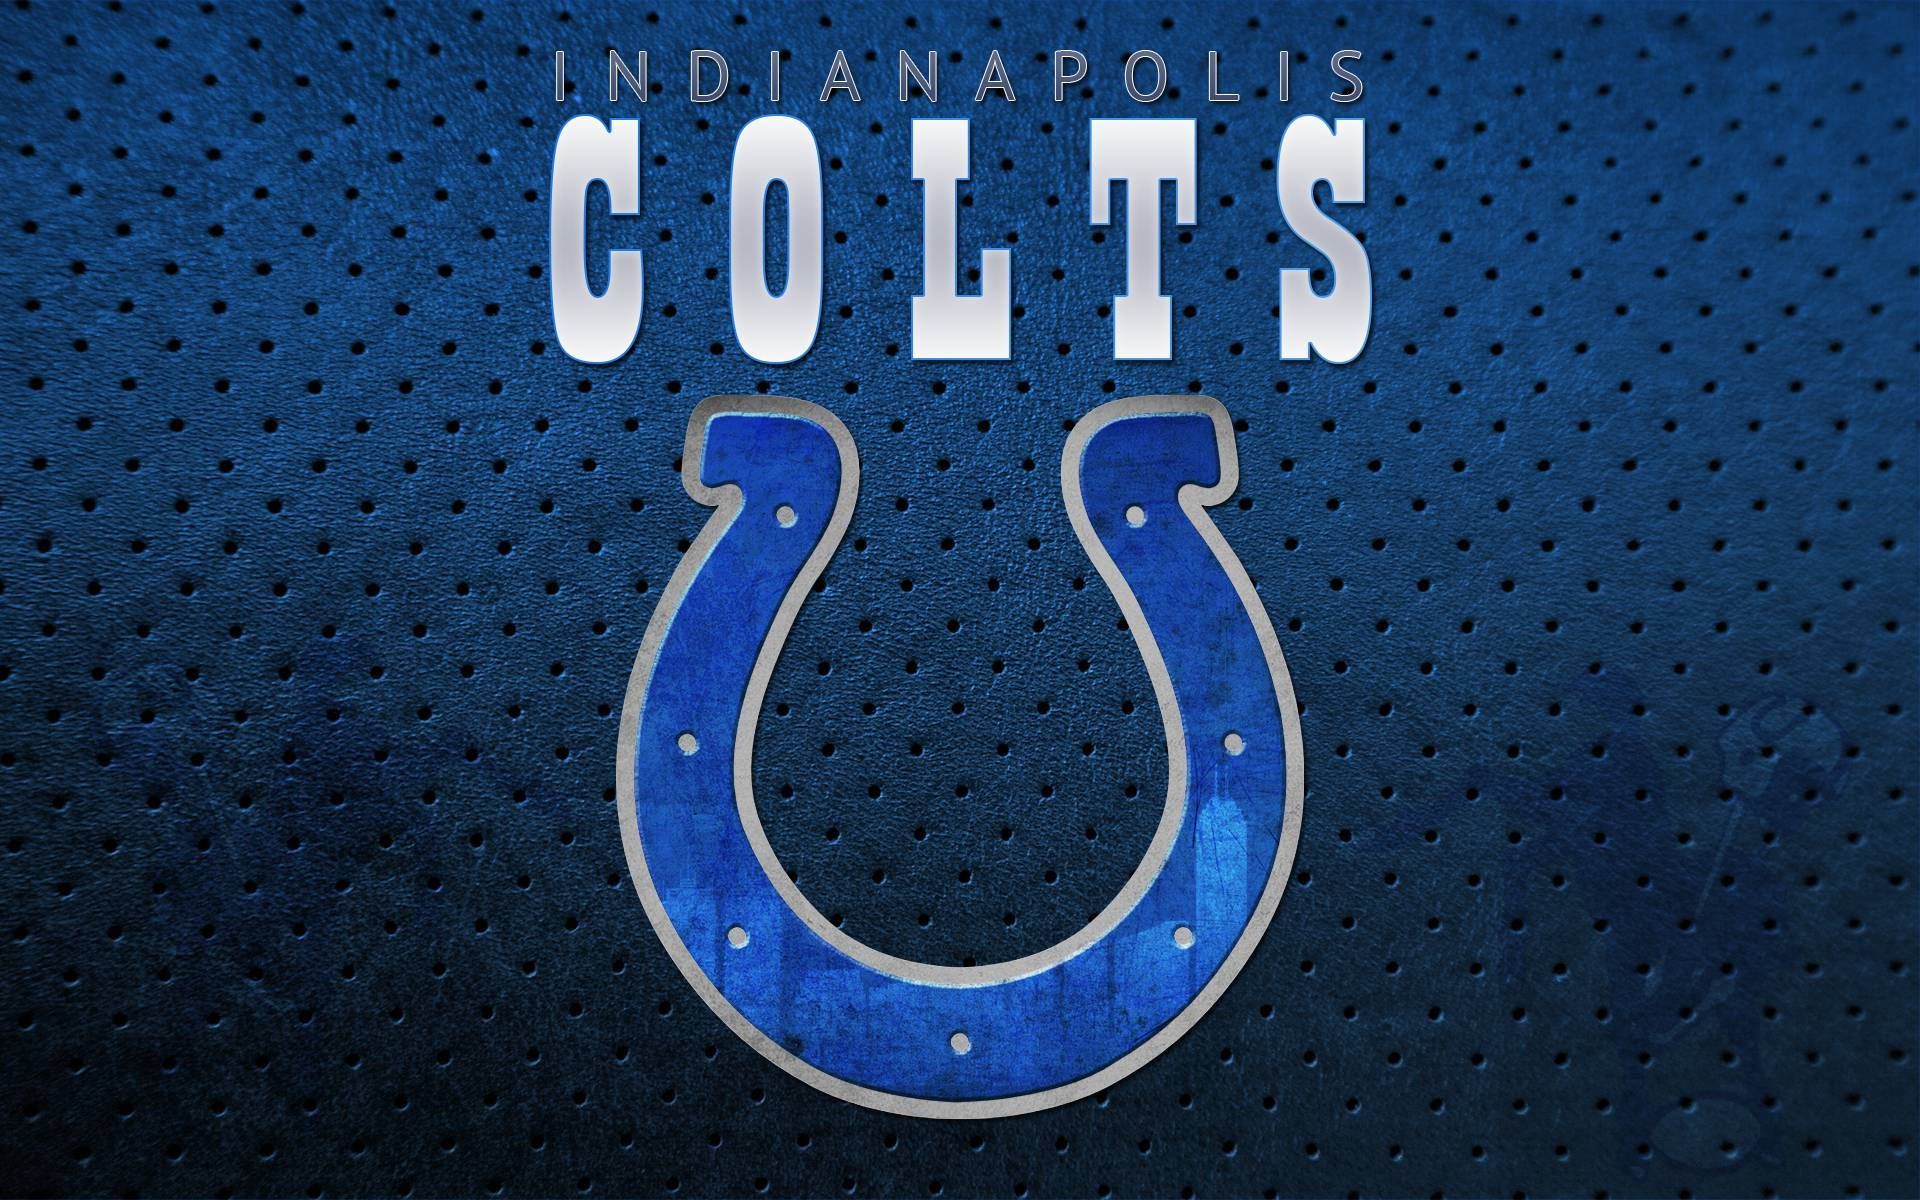 NFL Super Bowls Indianapolis Colts Emblem Wallpaper